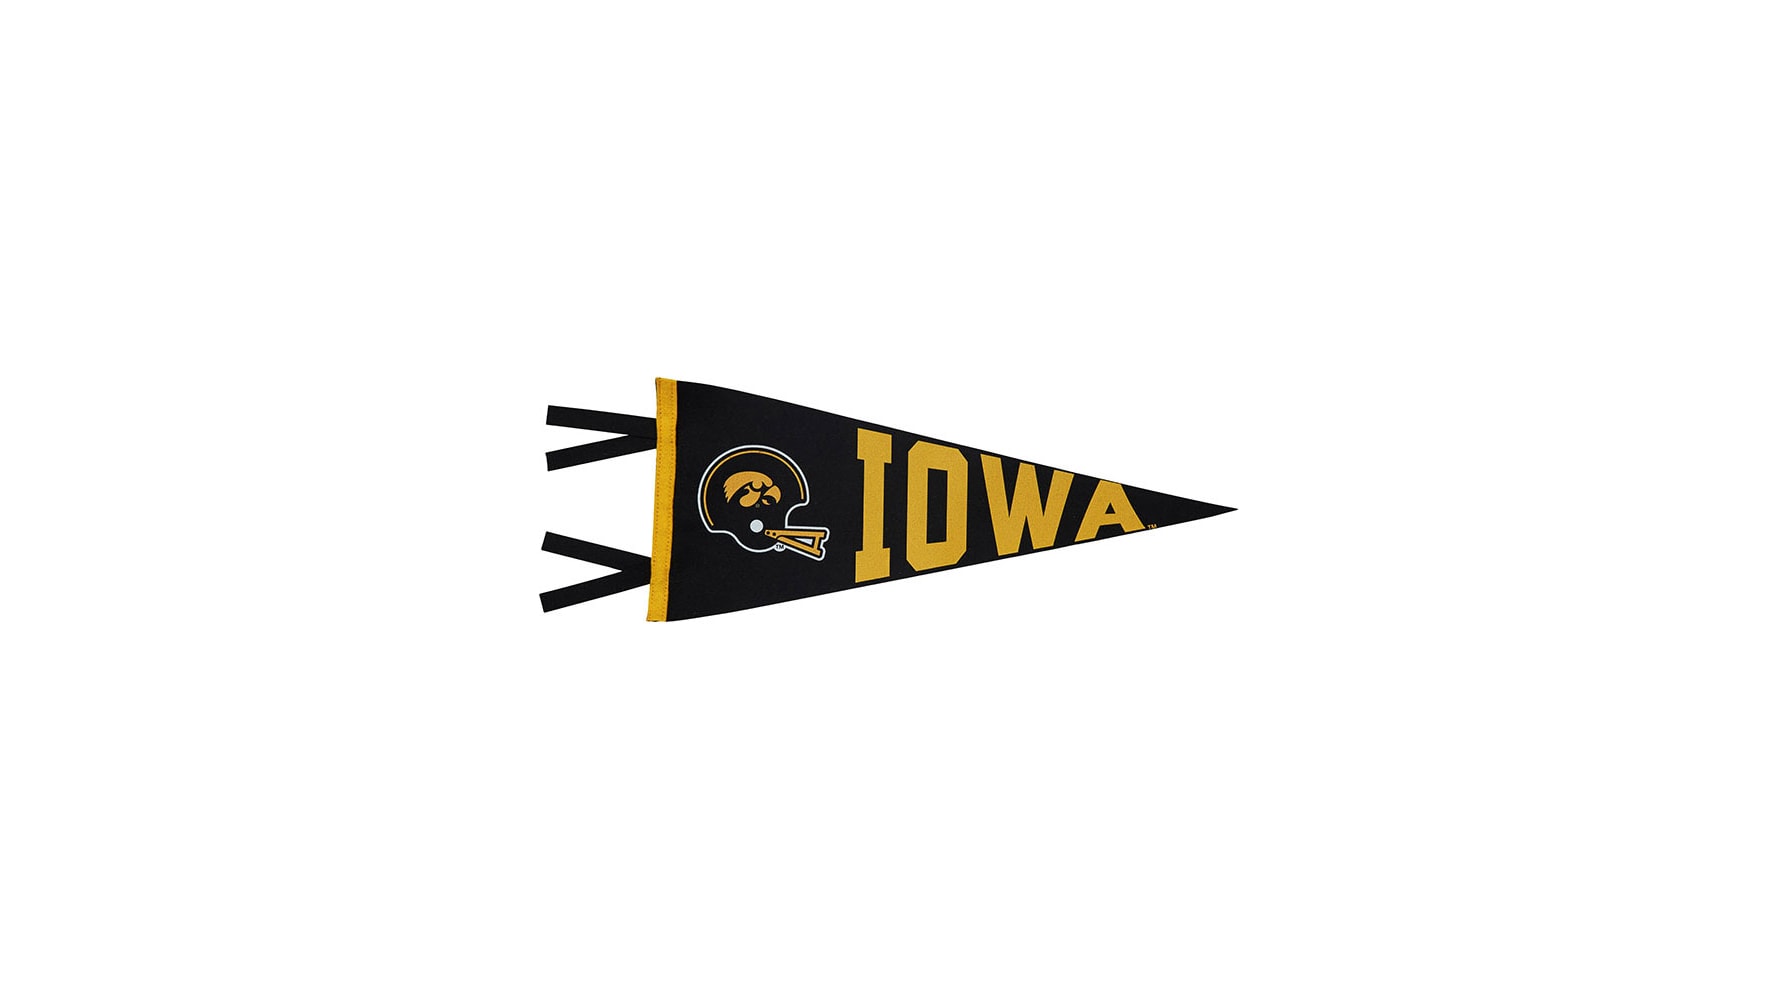 Iowa Hawkeyes: Basketball - Modern Disc Wall Sign